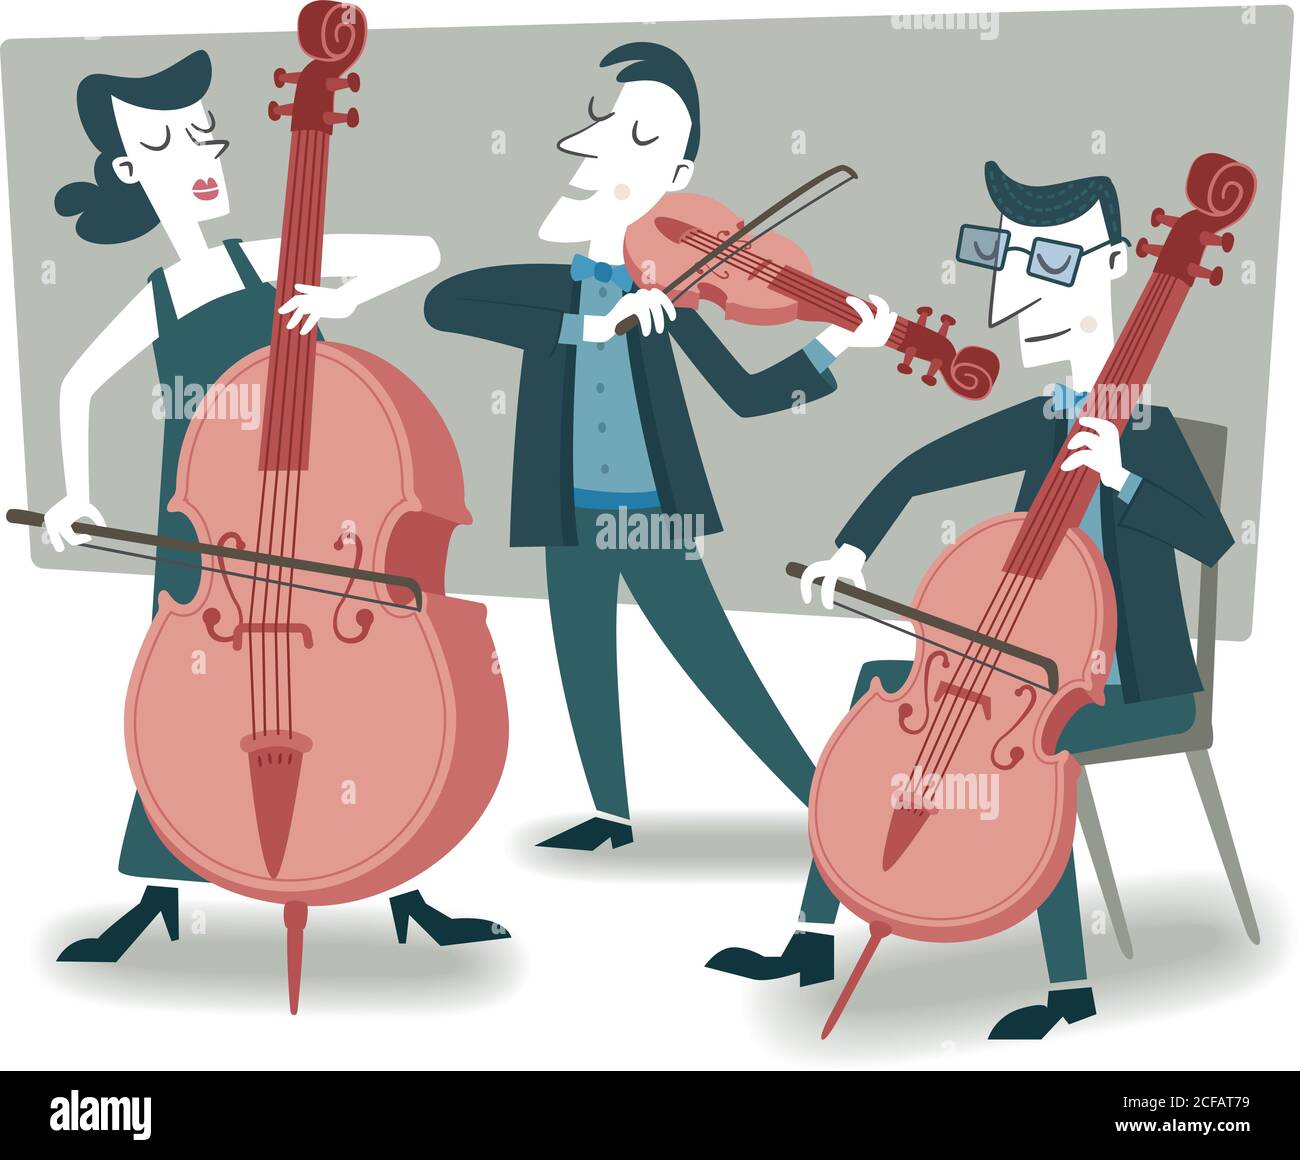 Illustrazione in stile retrò di vari musicisti classici che suonano i loro strumenti. Illustrazione Vettoriale